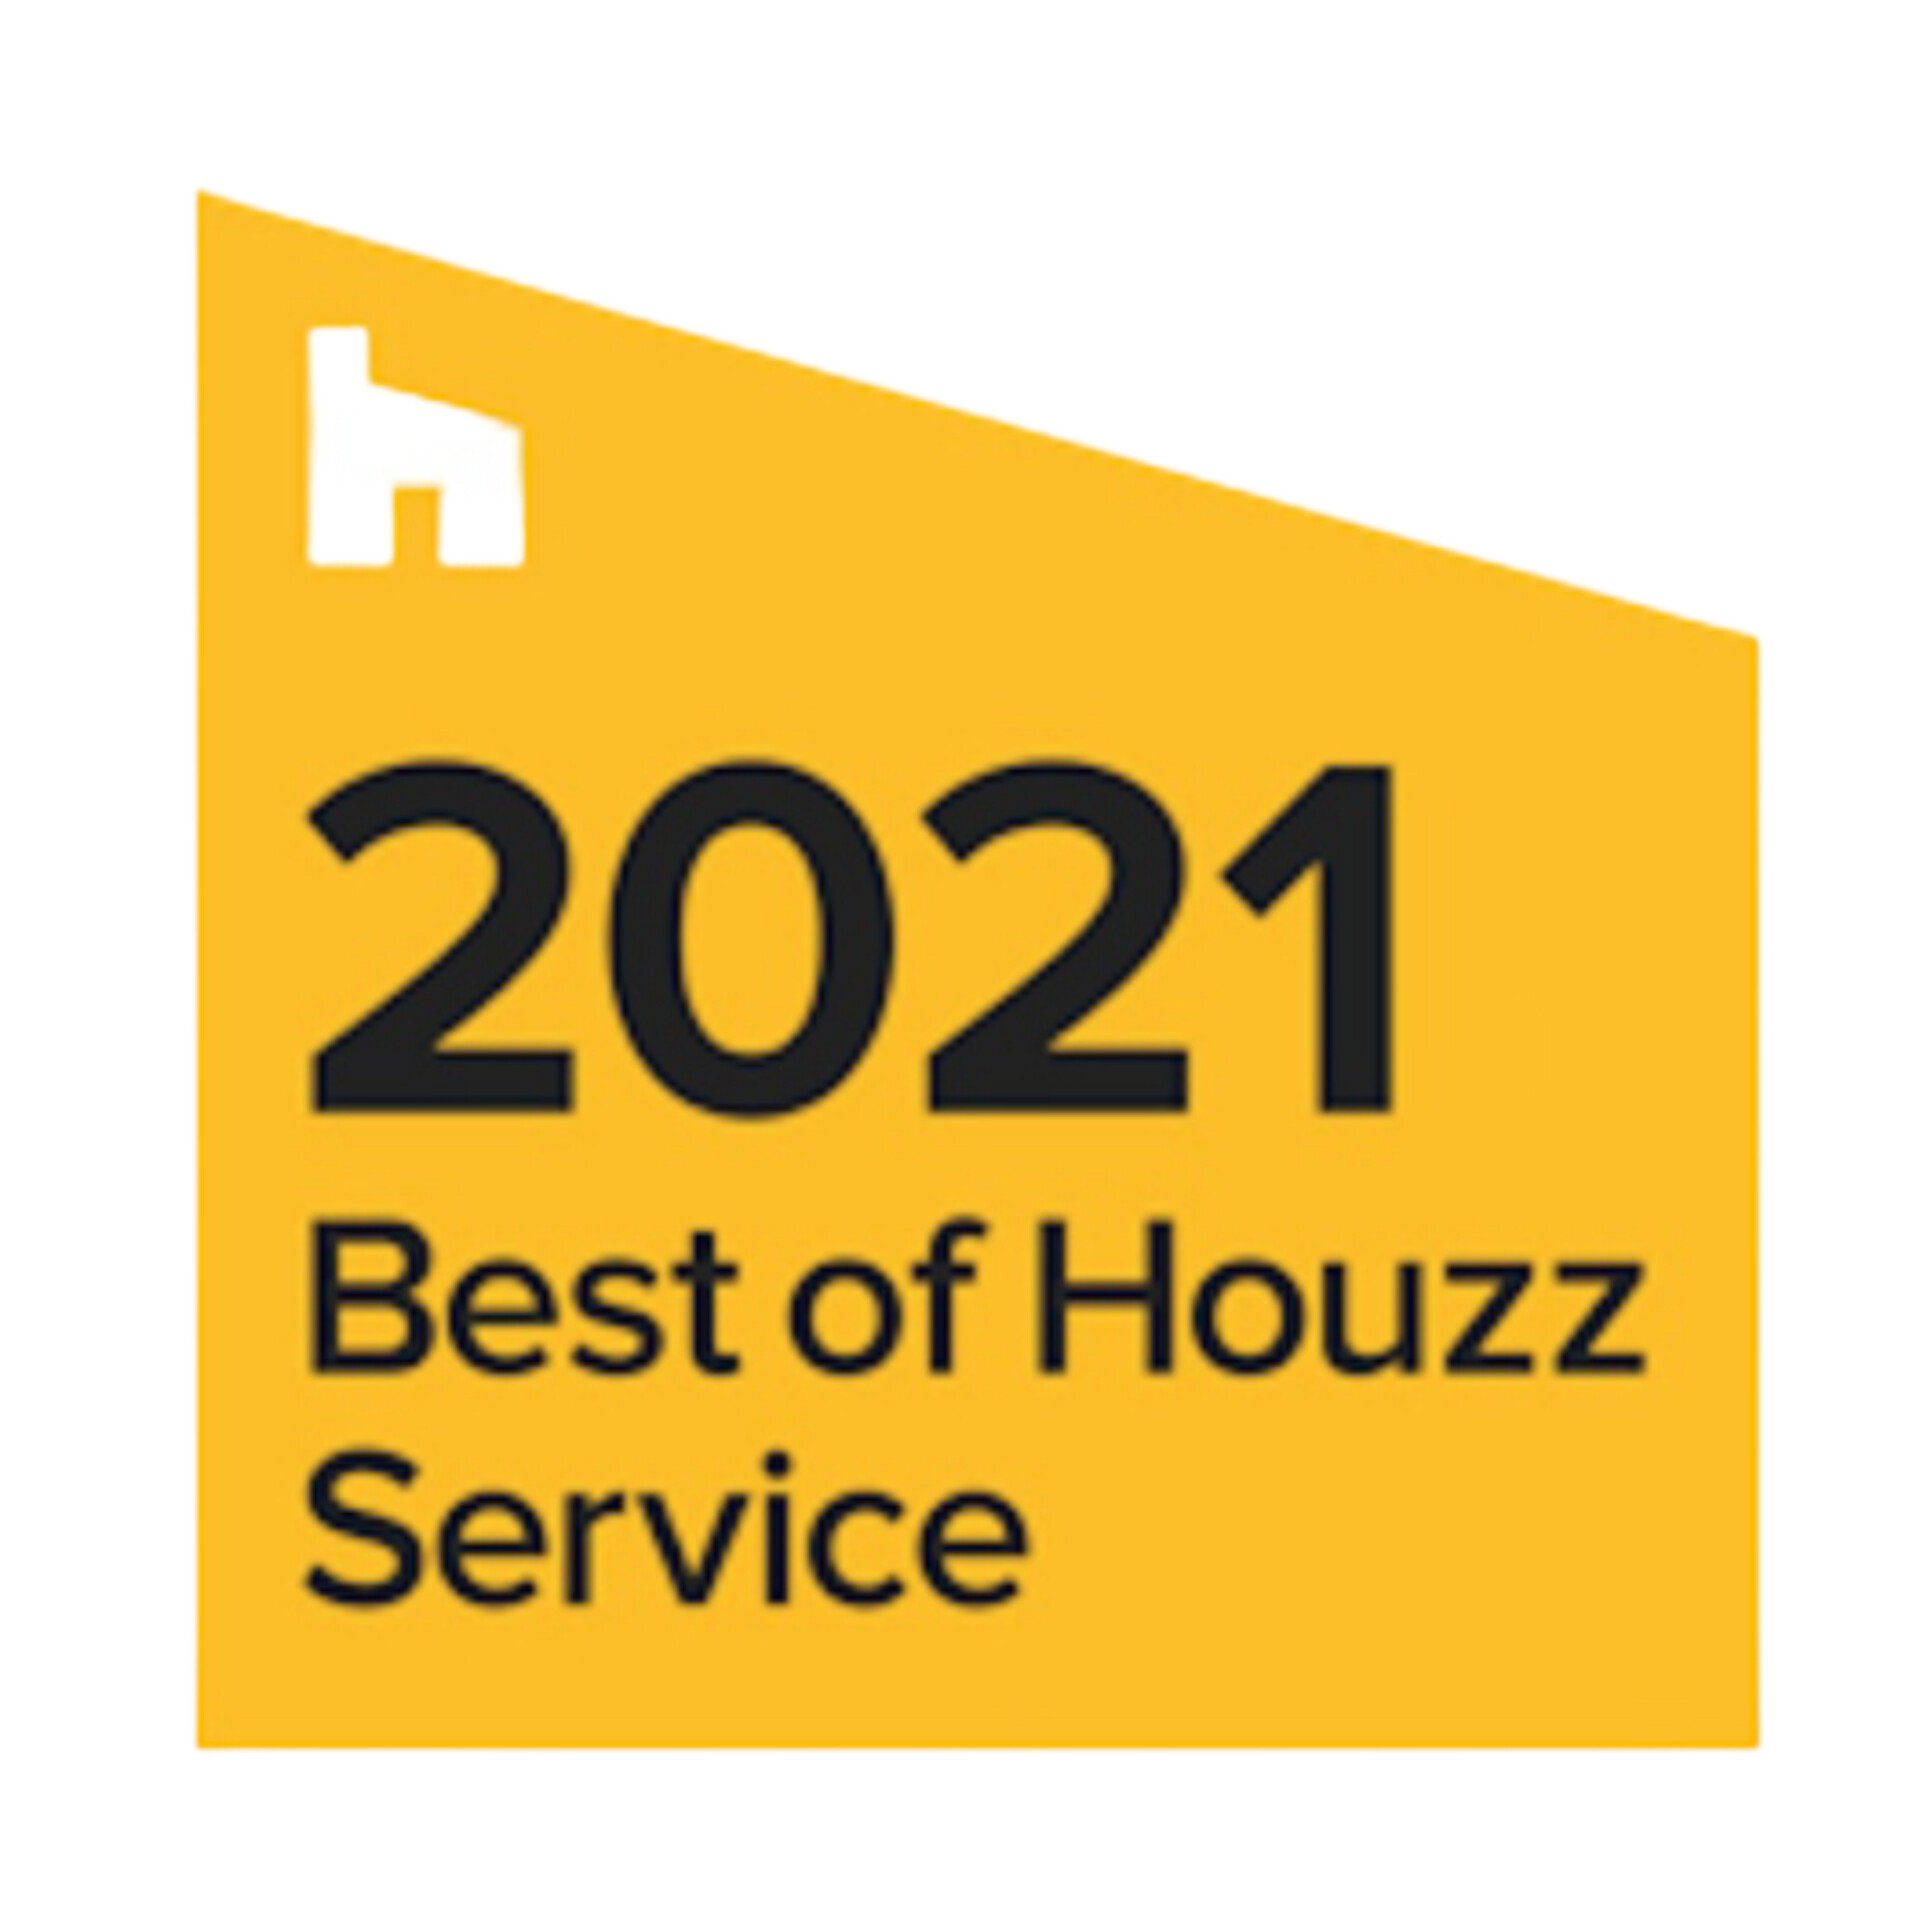 best-of-houzz-service-2021-magnus-flooring.jpg